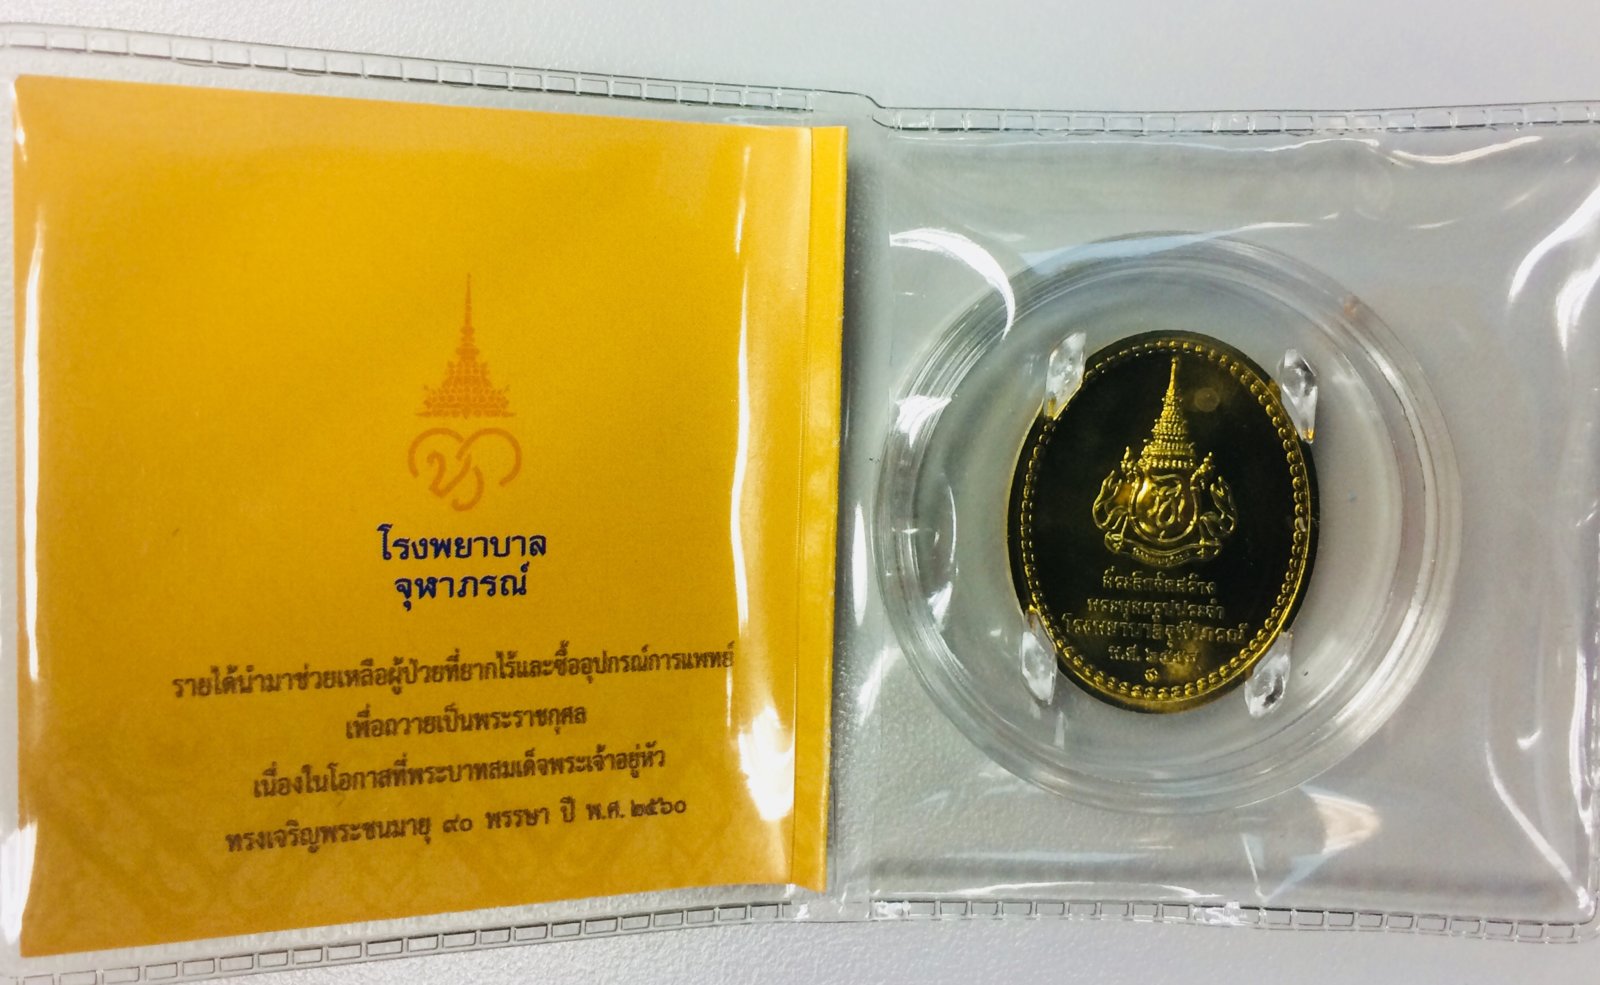 เหรียญพระพุทธสิรินาคเภษัชยคุรุจุฬาภรณ์ ปี 2558 - หลัง.JPG